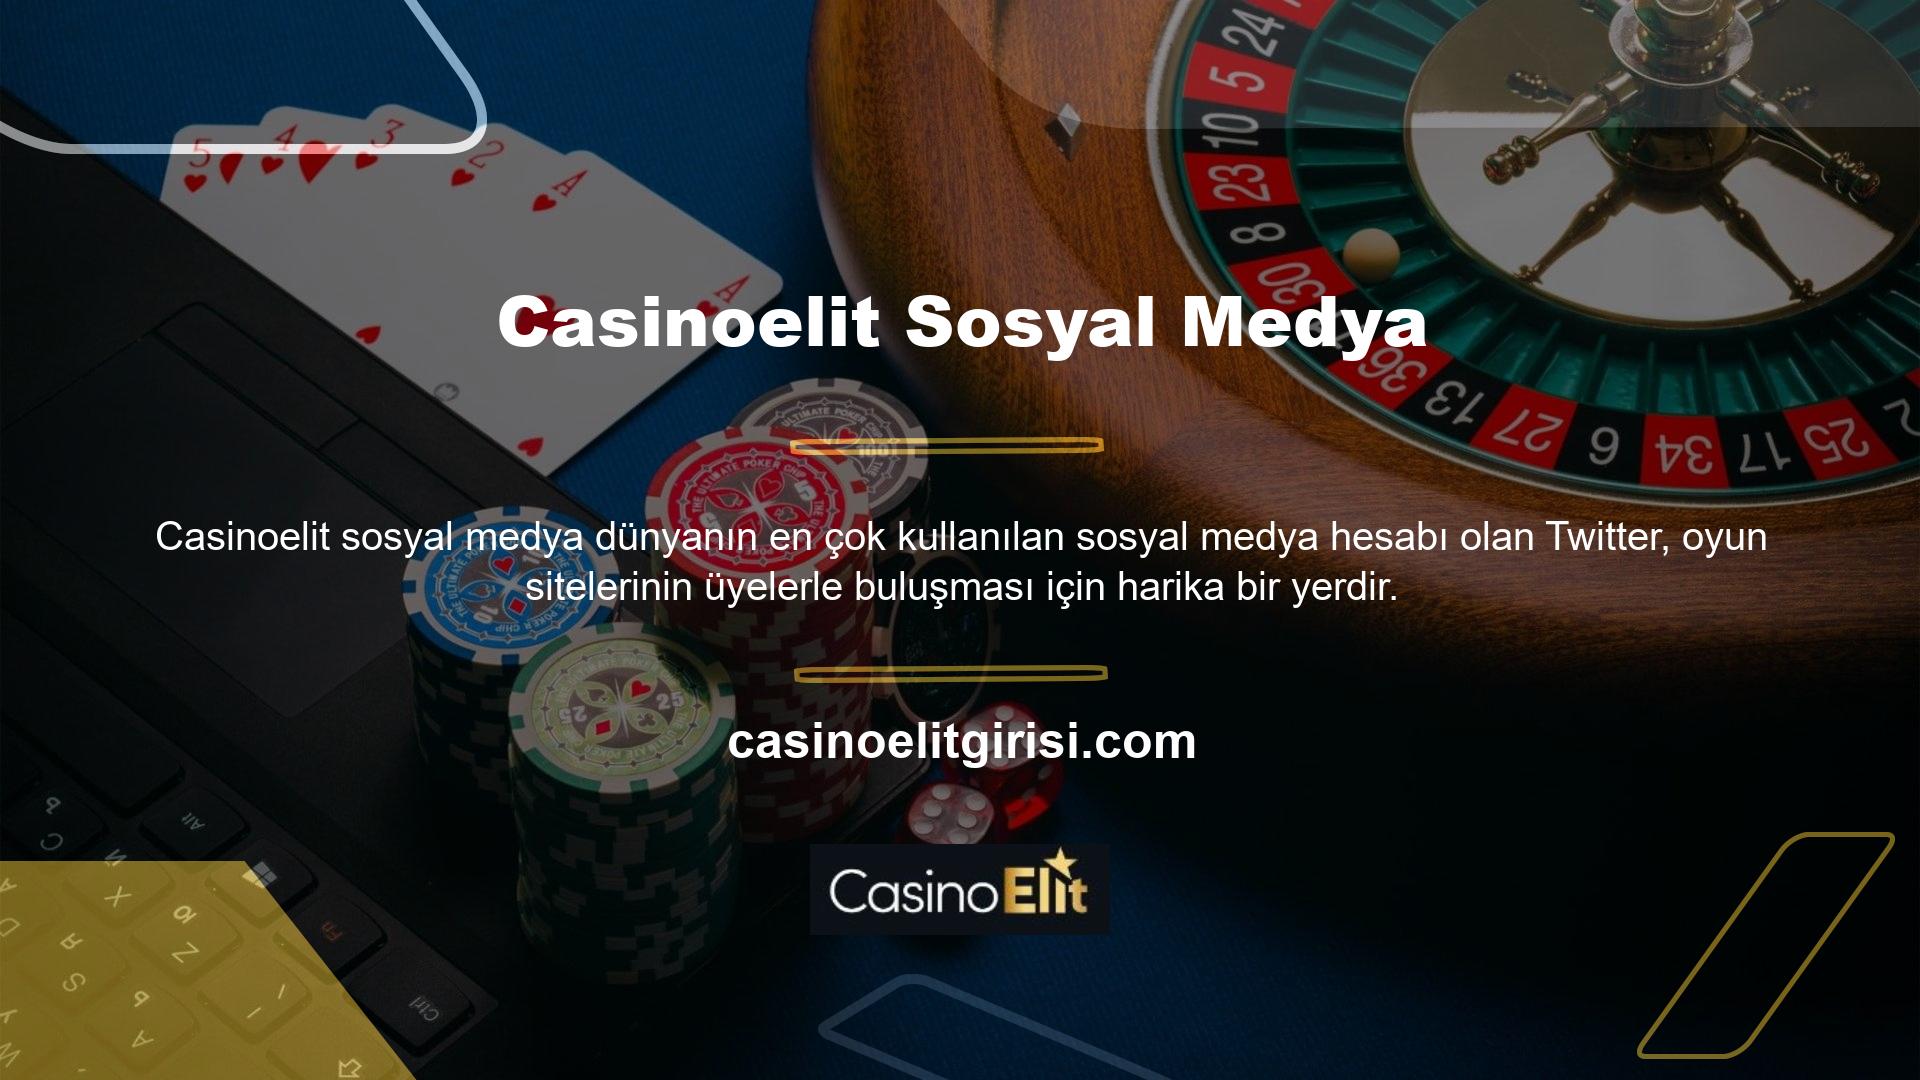 Üyelerimizin en sevdiği bahislerden biri olan Casinoelit sitesi, üyelerini Twitter üzerinden bilgilendirmektedir